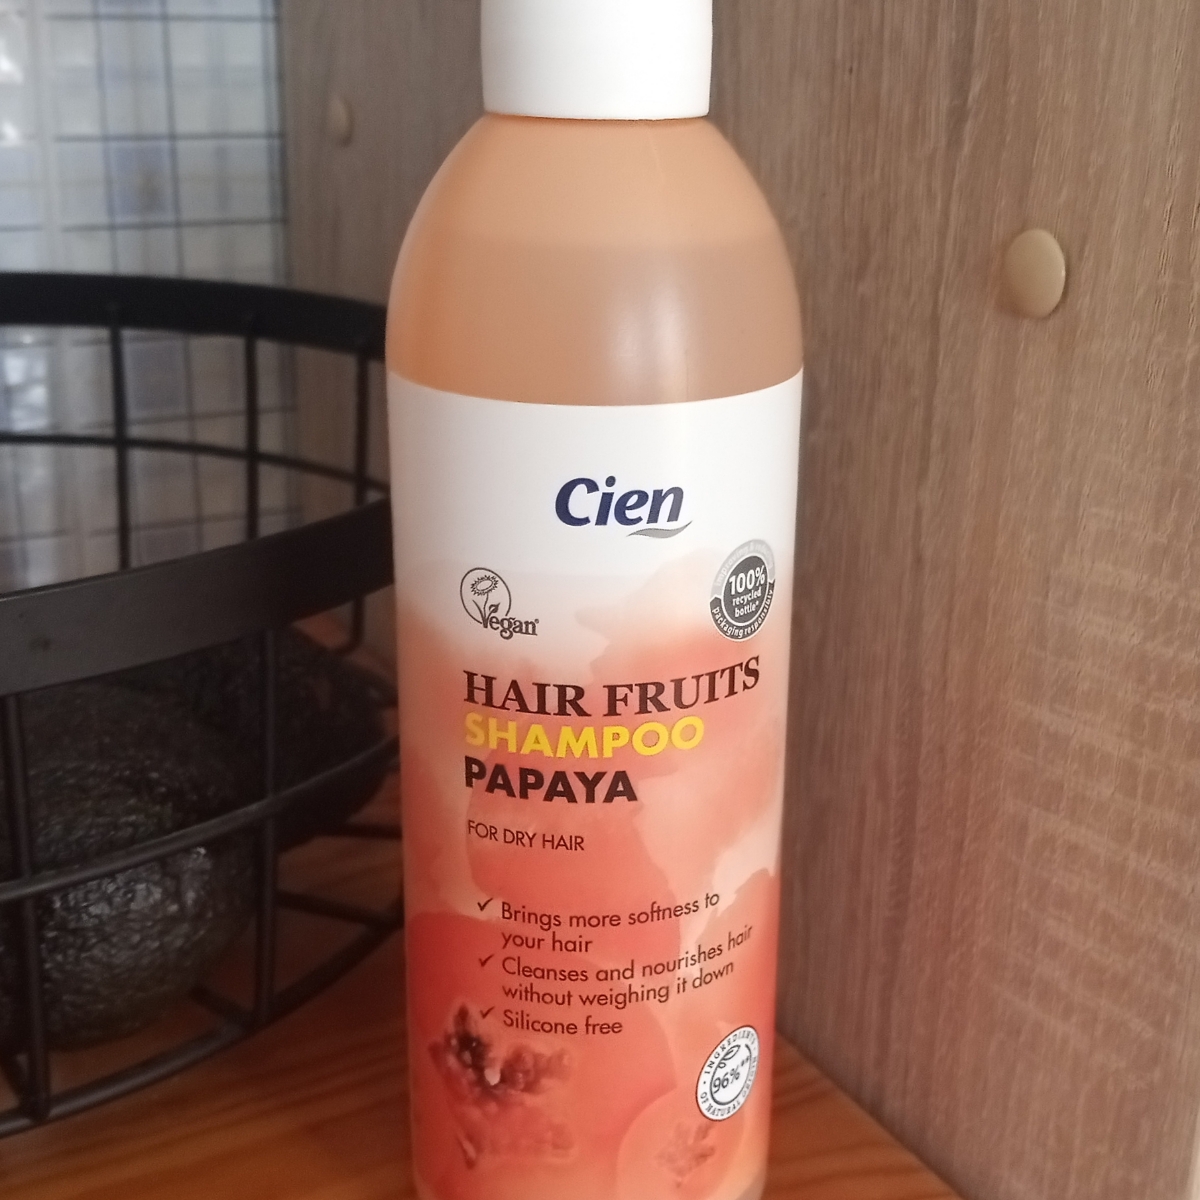 Avaliações de Hair Fruits Shampoo Papaya da Cien | abillion